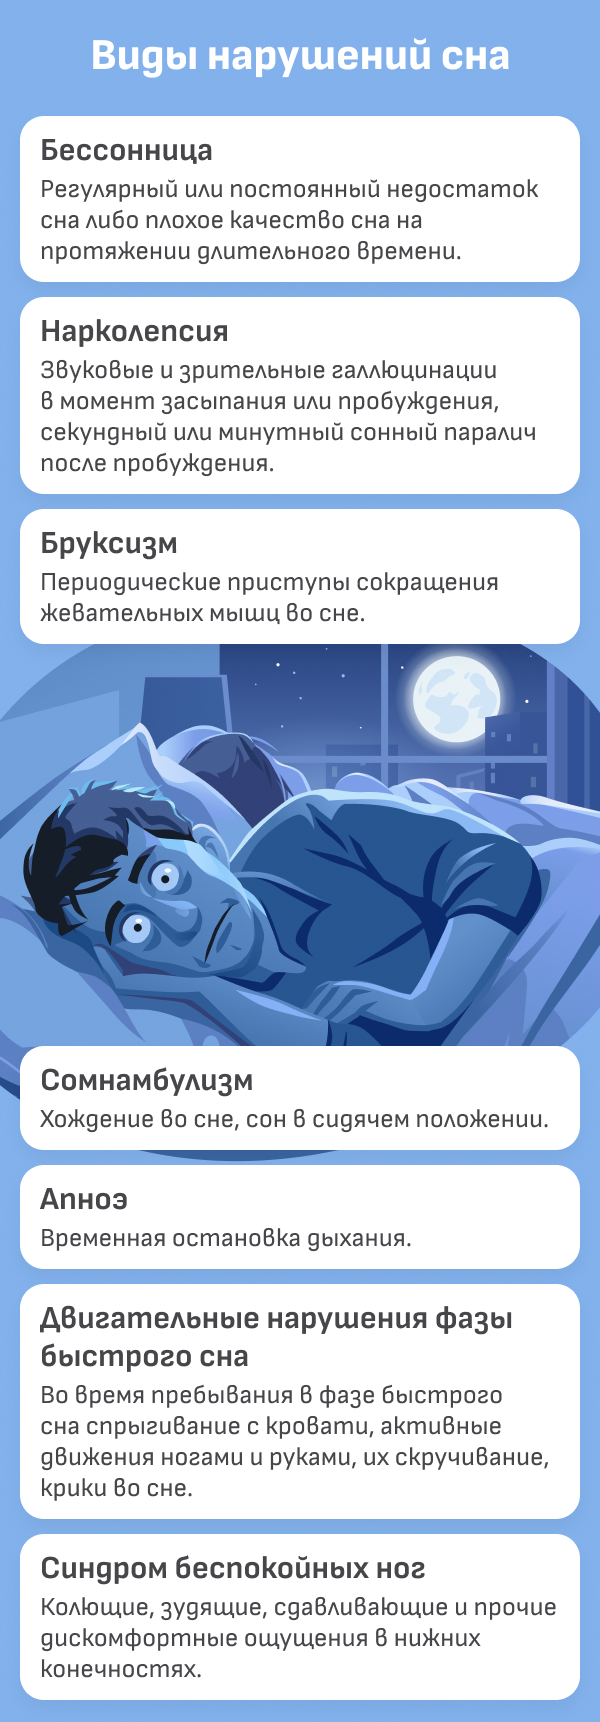 Медицинские условия, вызывающие нарушение сна